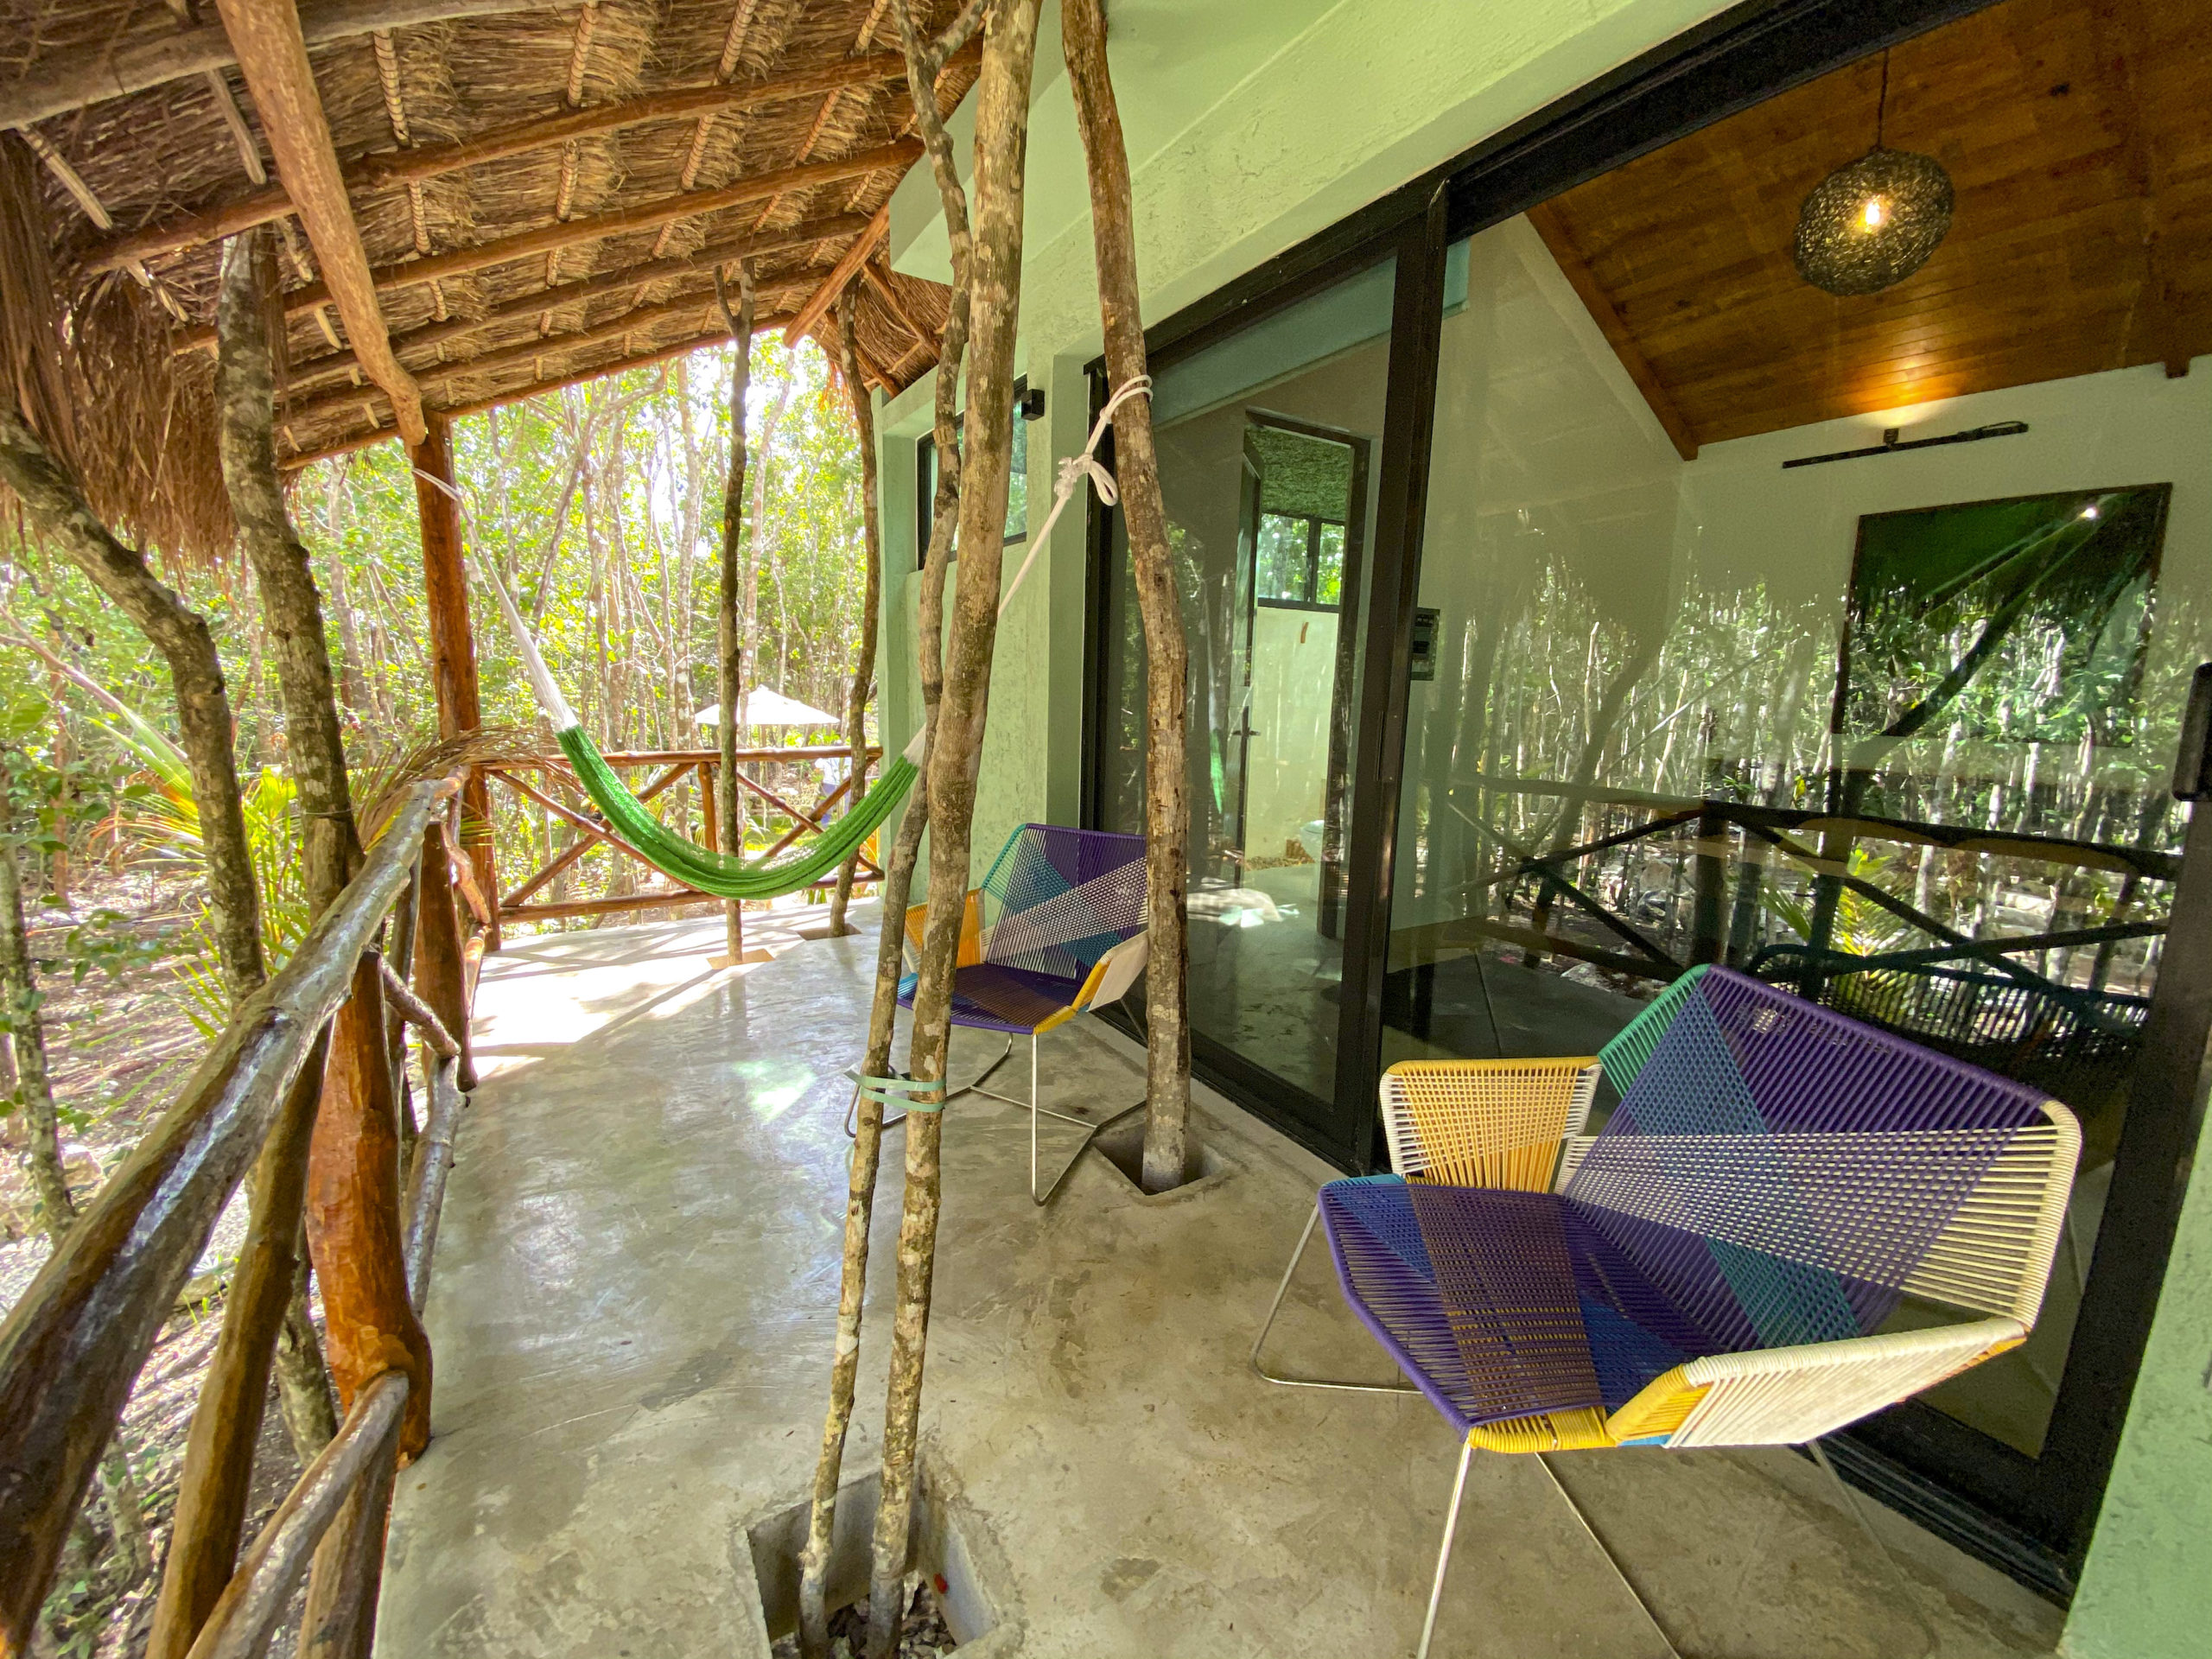 Villa Jaguar, alojamiento, exterior, naturaleza, balcón, rústico, sillas, árboles, Cozumel